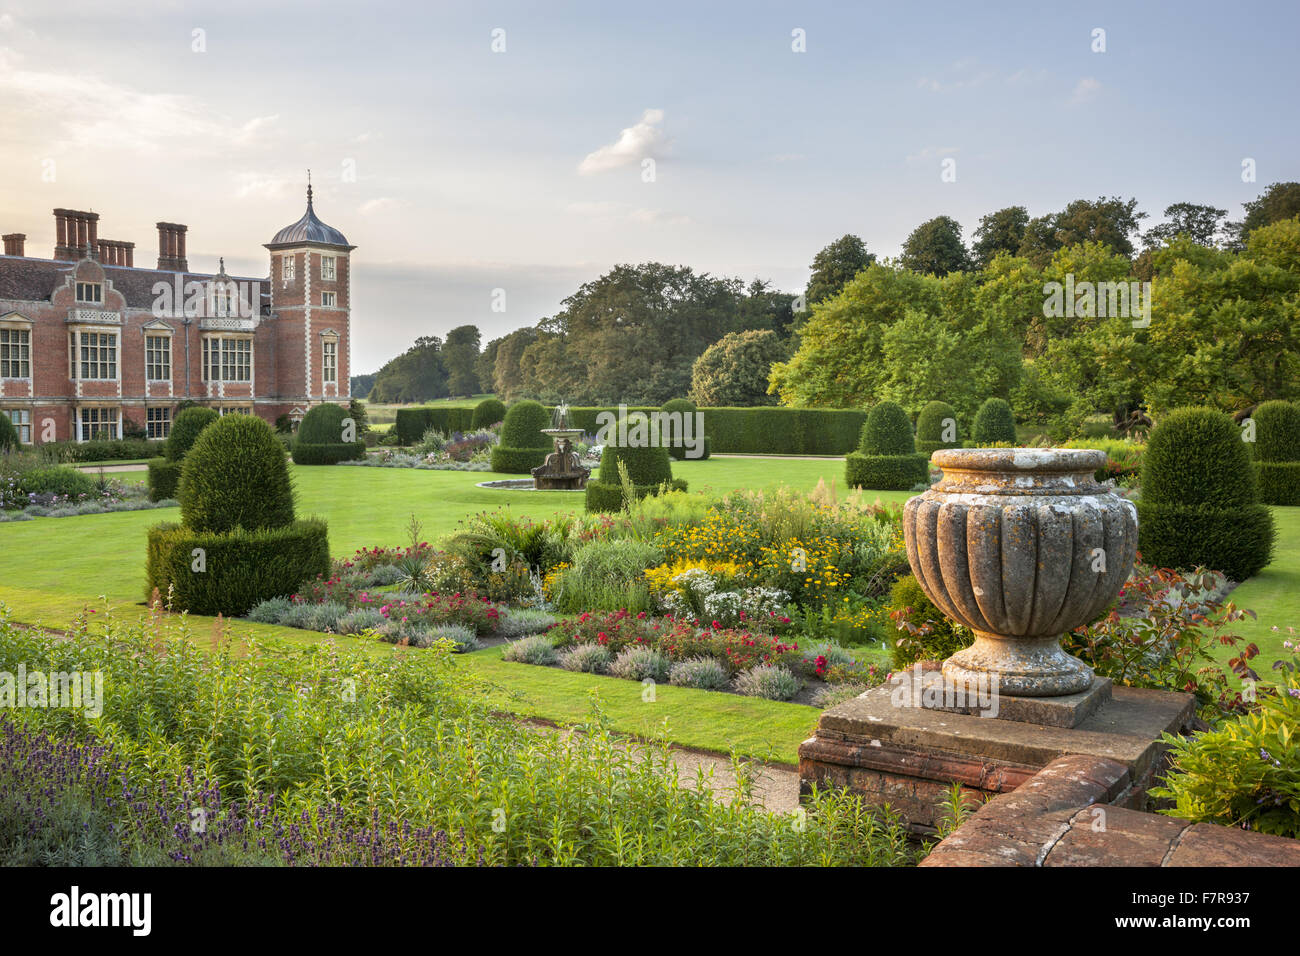 Die Parterre-Gartens in Blickling Estate, Norfolk. Blickling ist ein Turm aus rotem Backstein jakobinischen Herrenhaus, sitzen in wunderschönen Gärten und Parks. Stockfoto